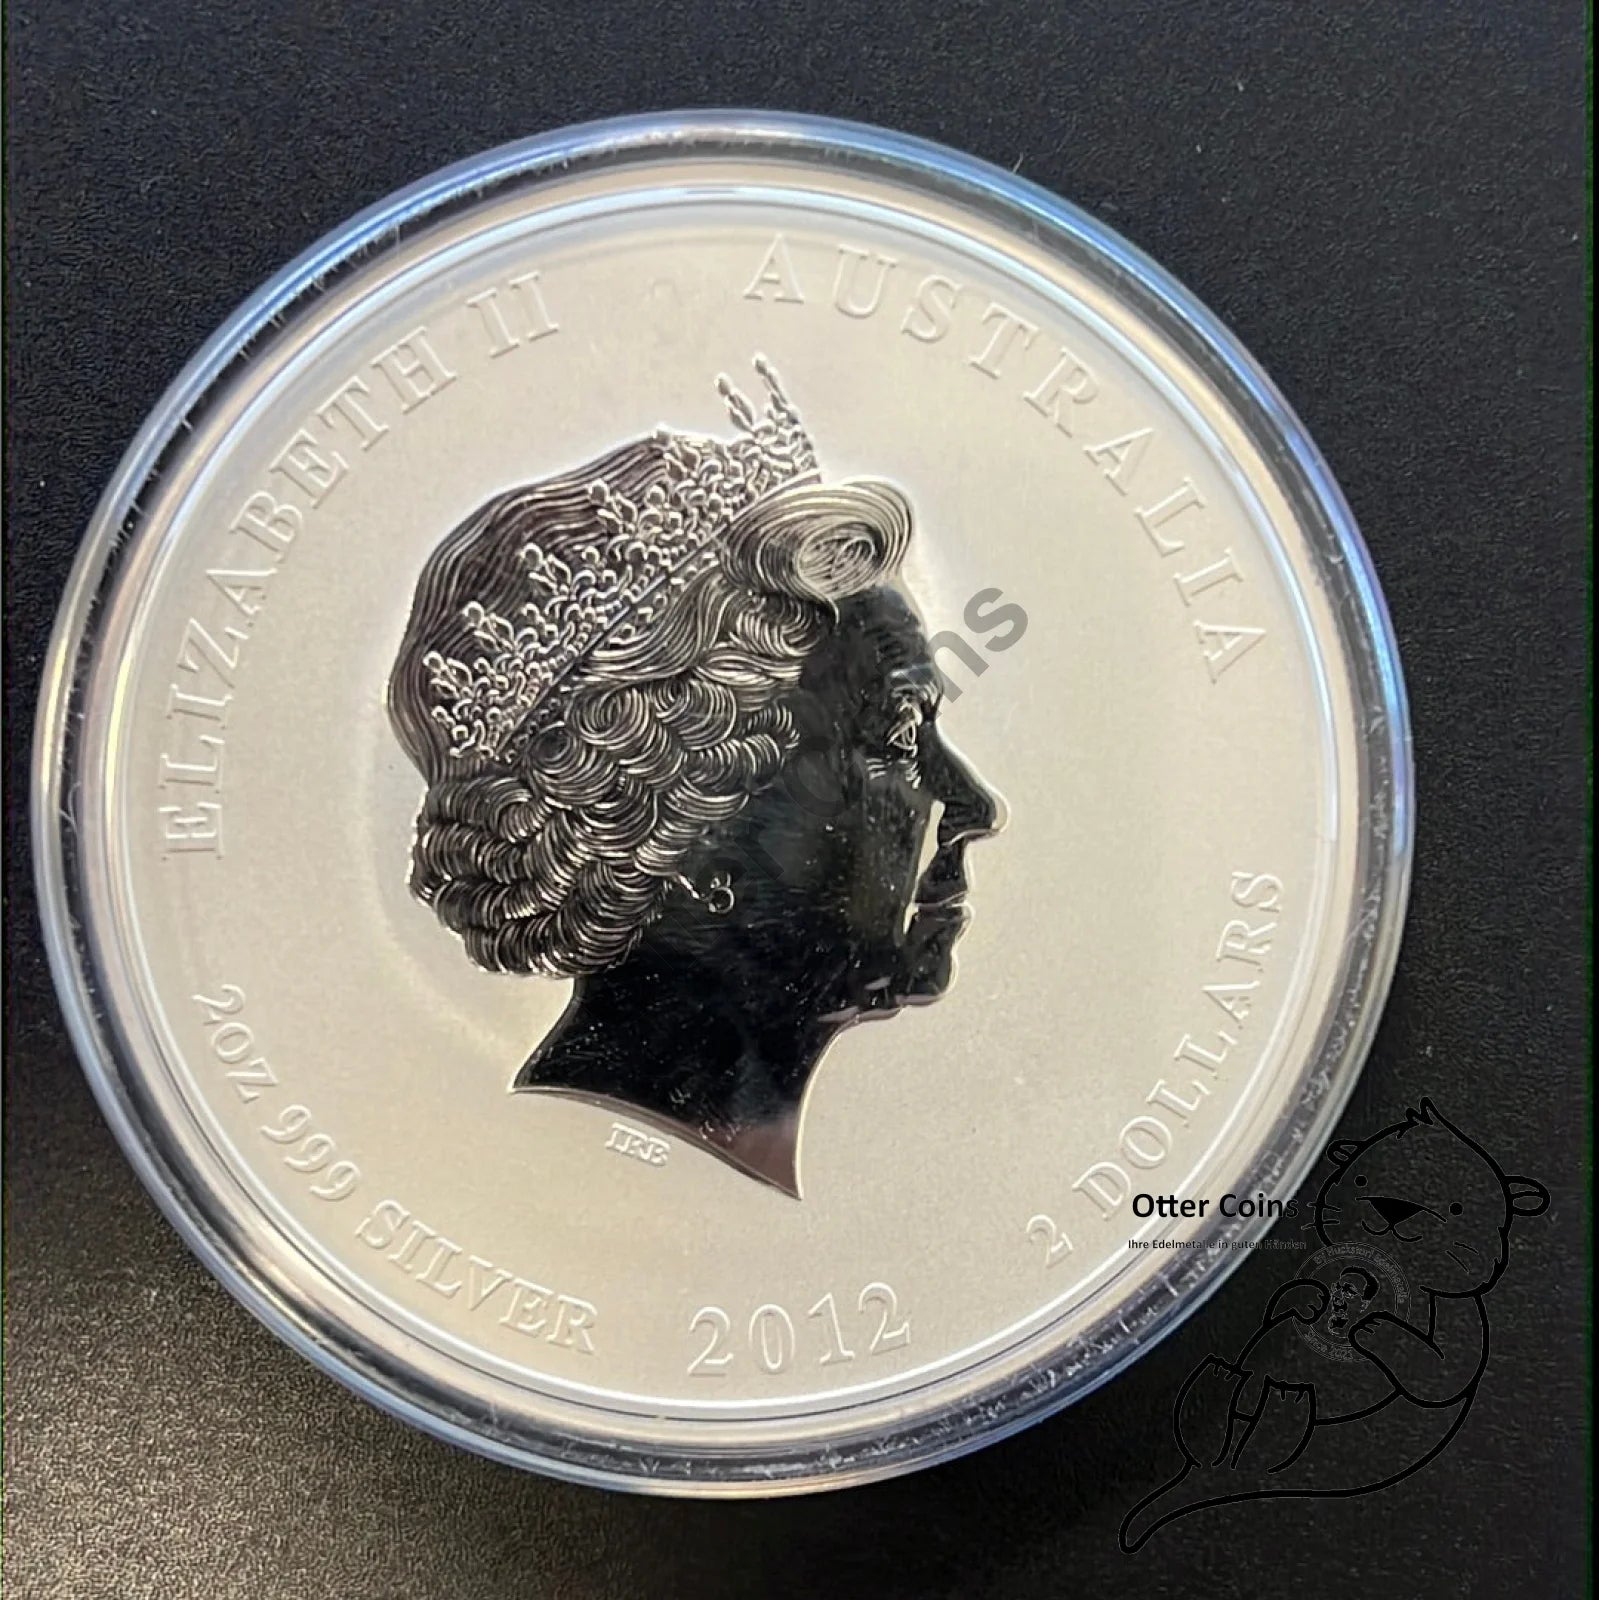 2 oz Silbermünze Australien Lunar II Drache 2012*